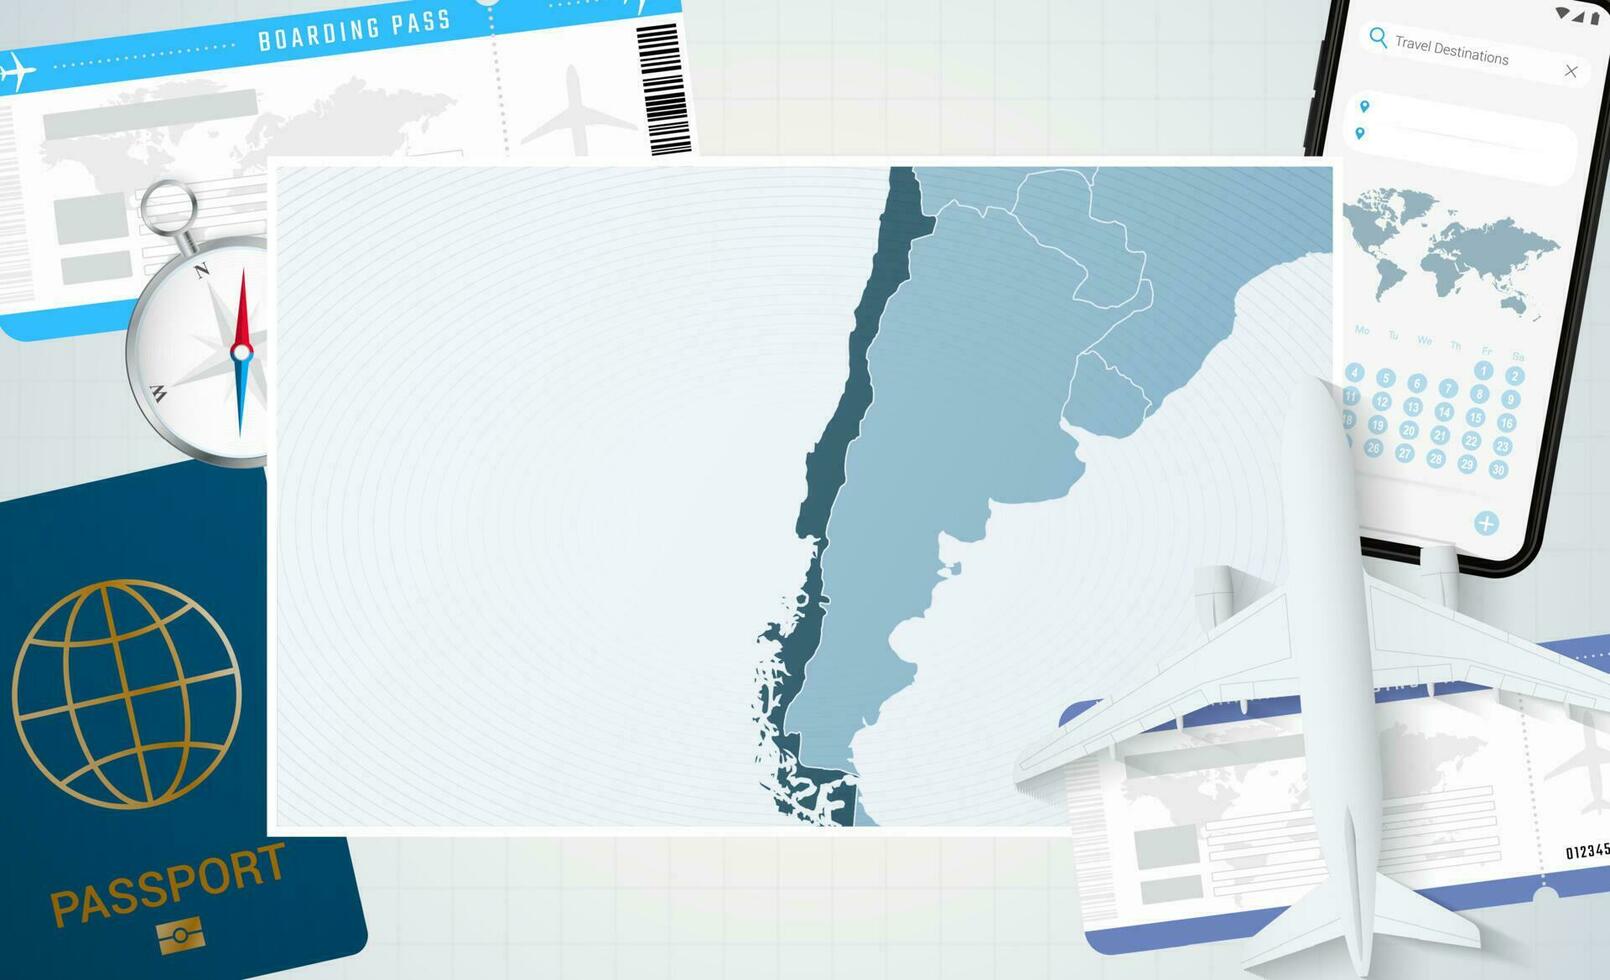 reis naar Chili, illustratie met een kaart van Chili. achtergrond met vliegtuig, cel telefoon, paspoort, kompas en kaartjes. vector